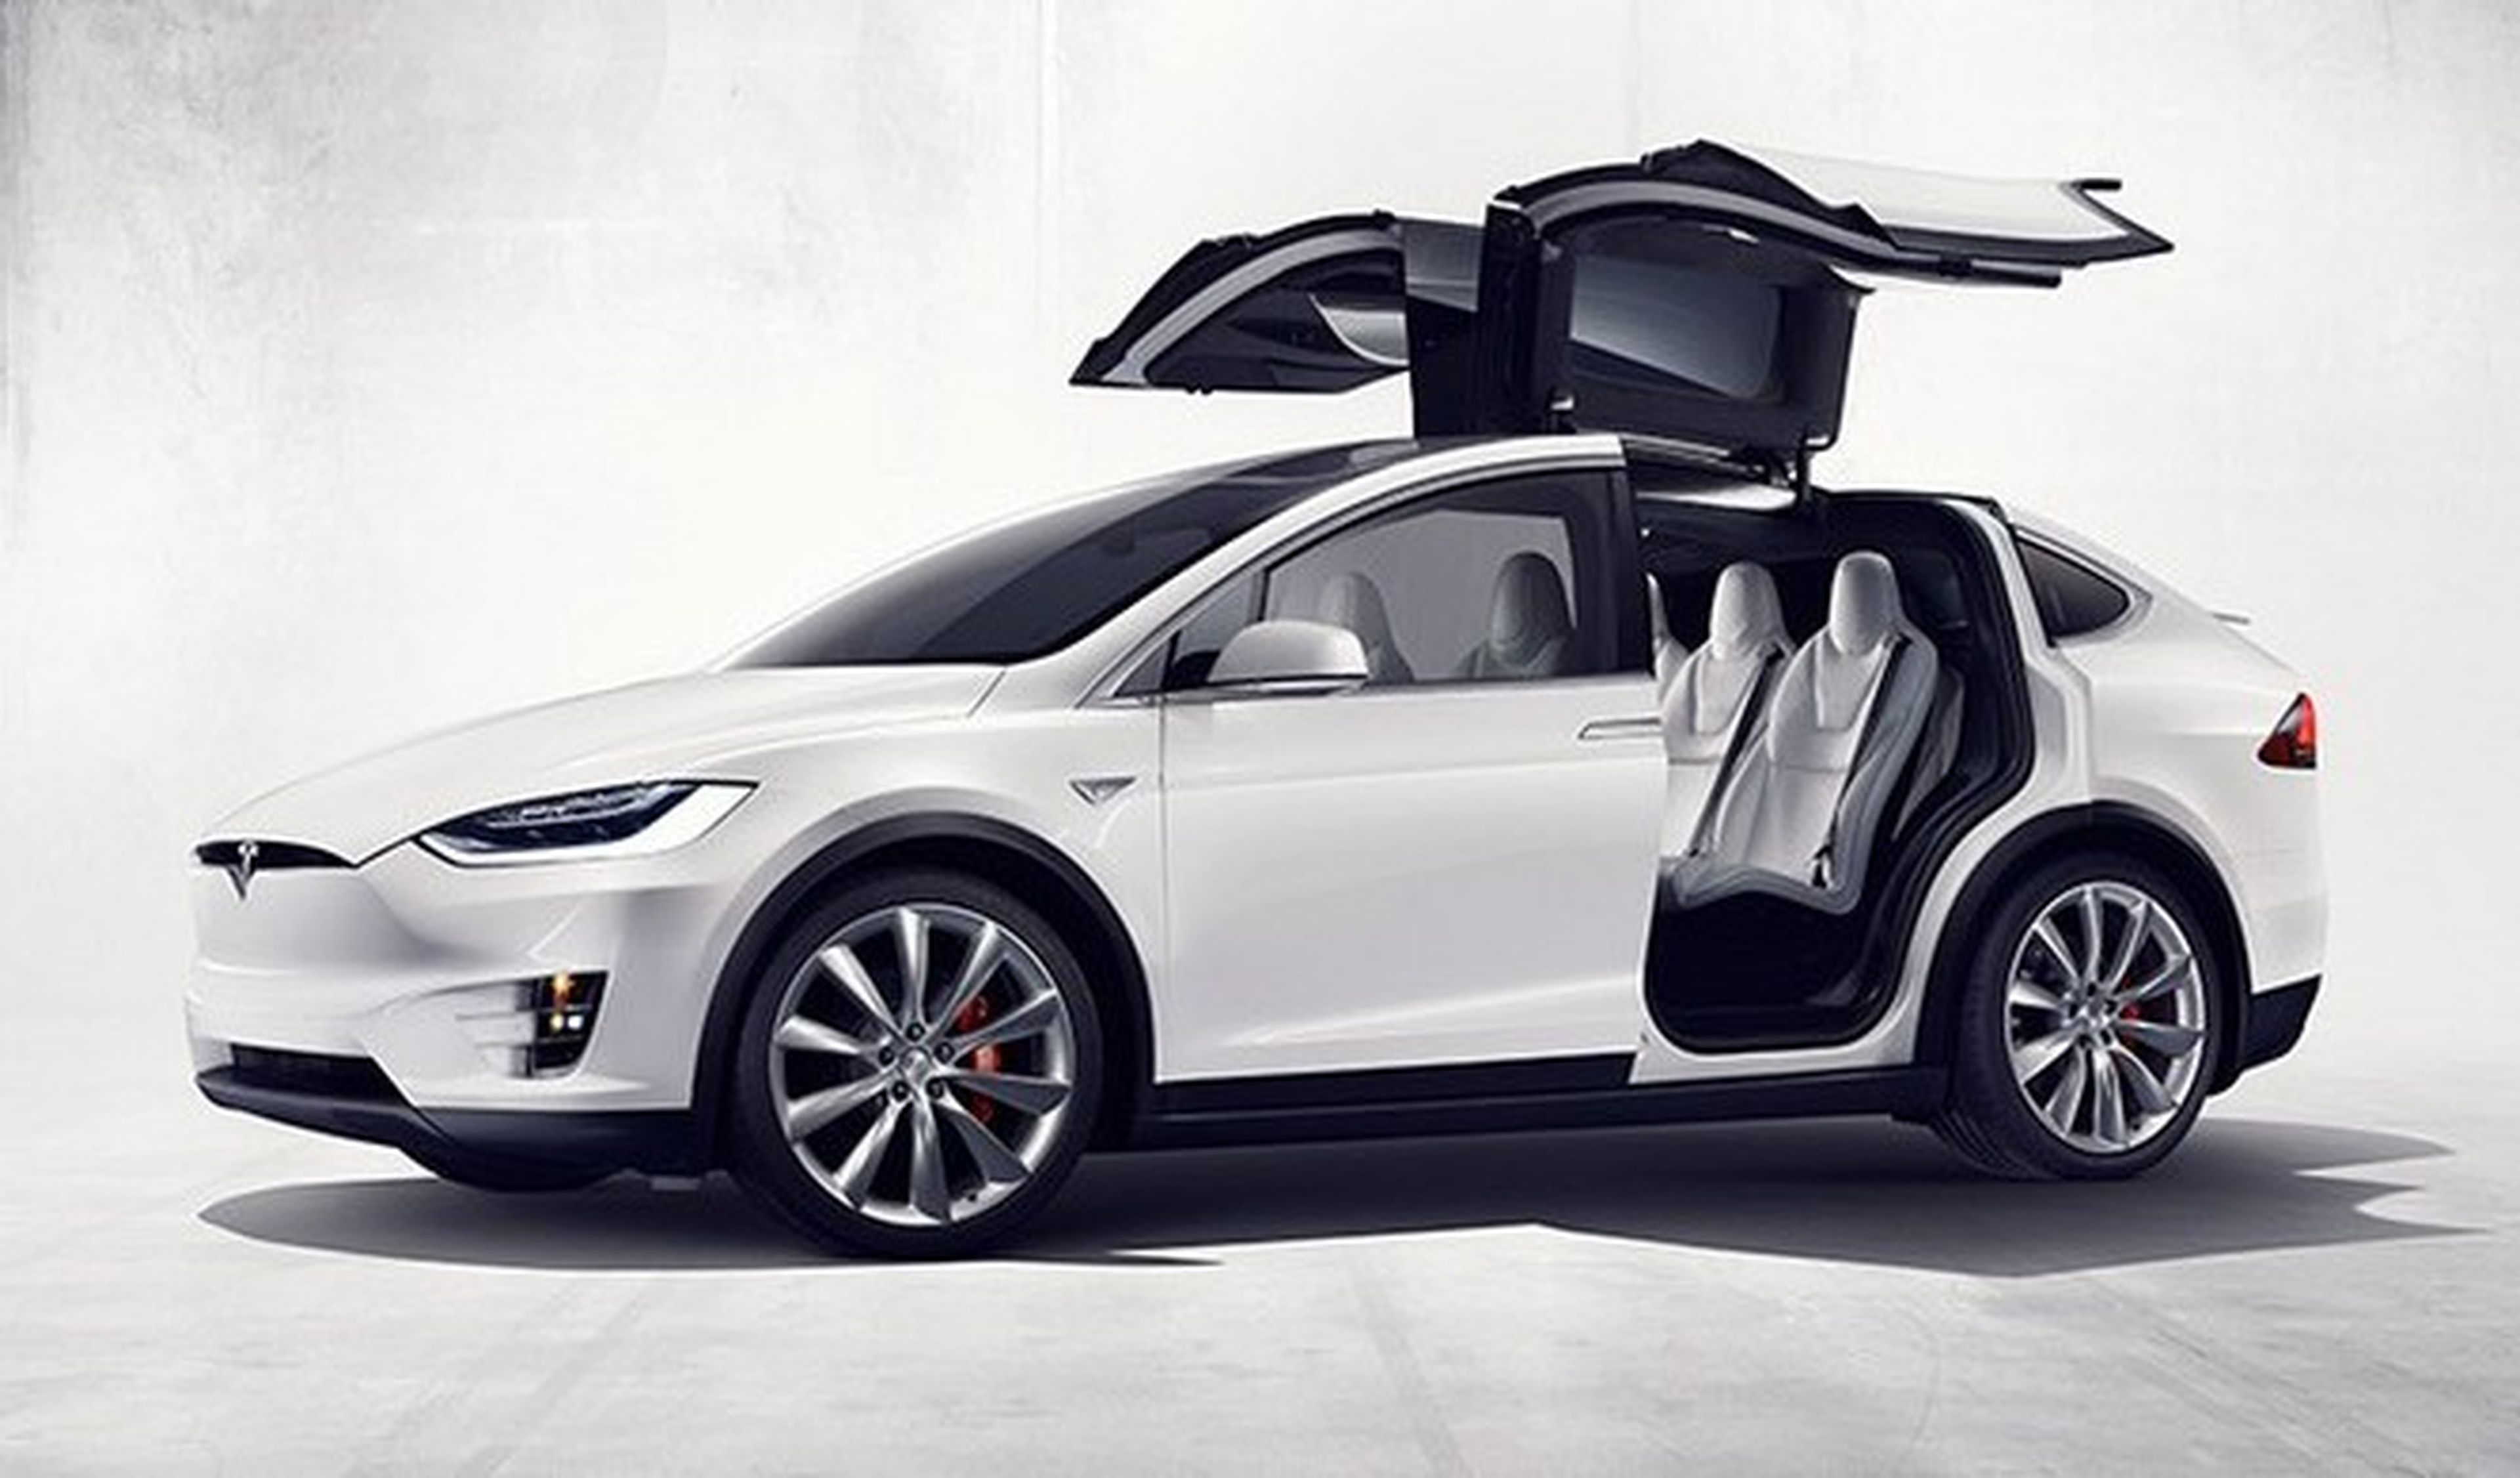 Nuevo fallo en las puertas del Tesla Model X